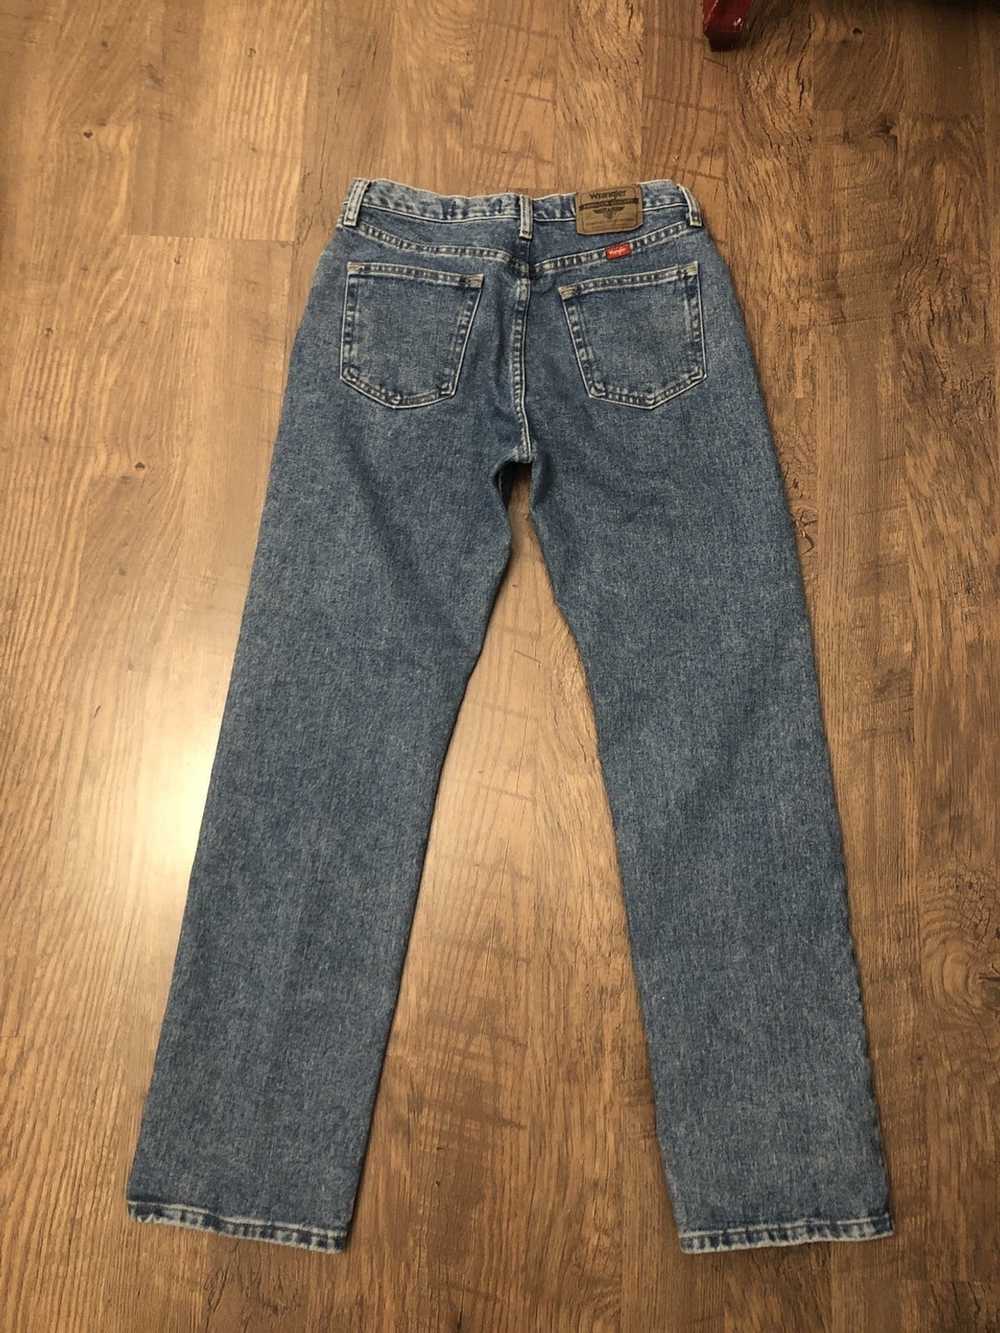 Vintage × Wrangler vintage wrangler jeans - image 3